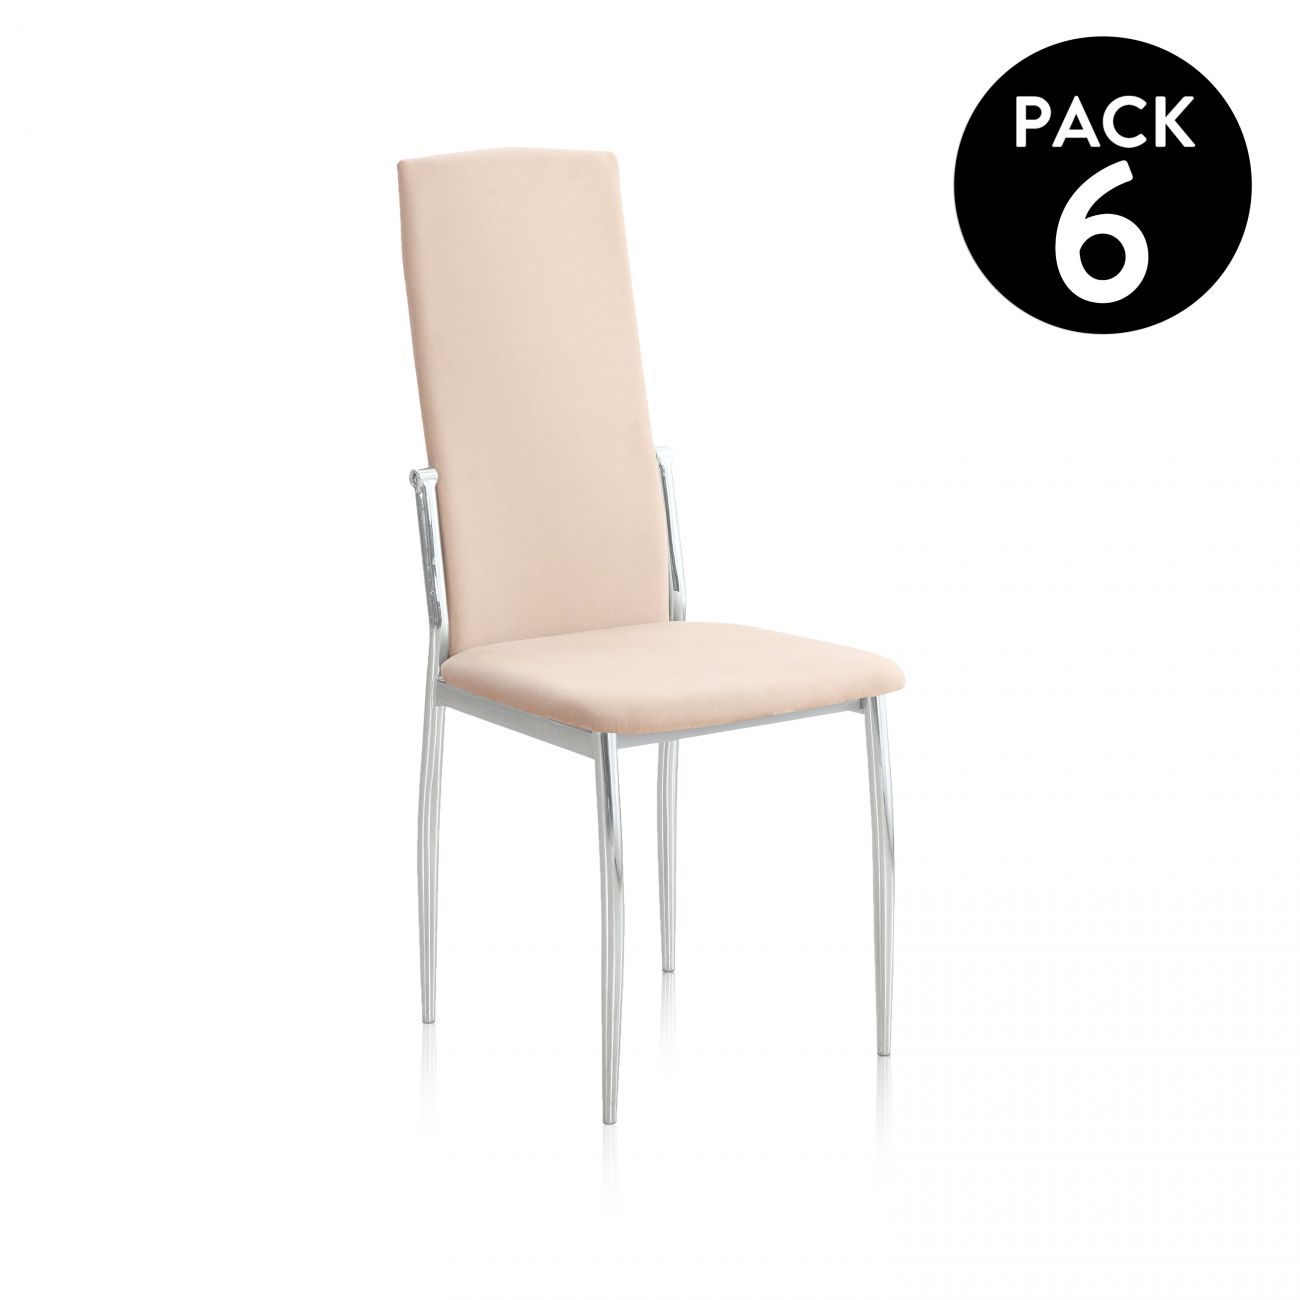 ▷ Pack 6 sillas de comedor Sakura